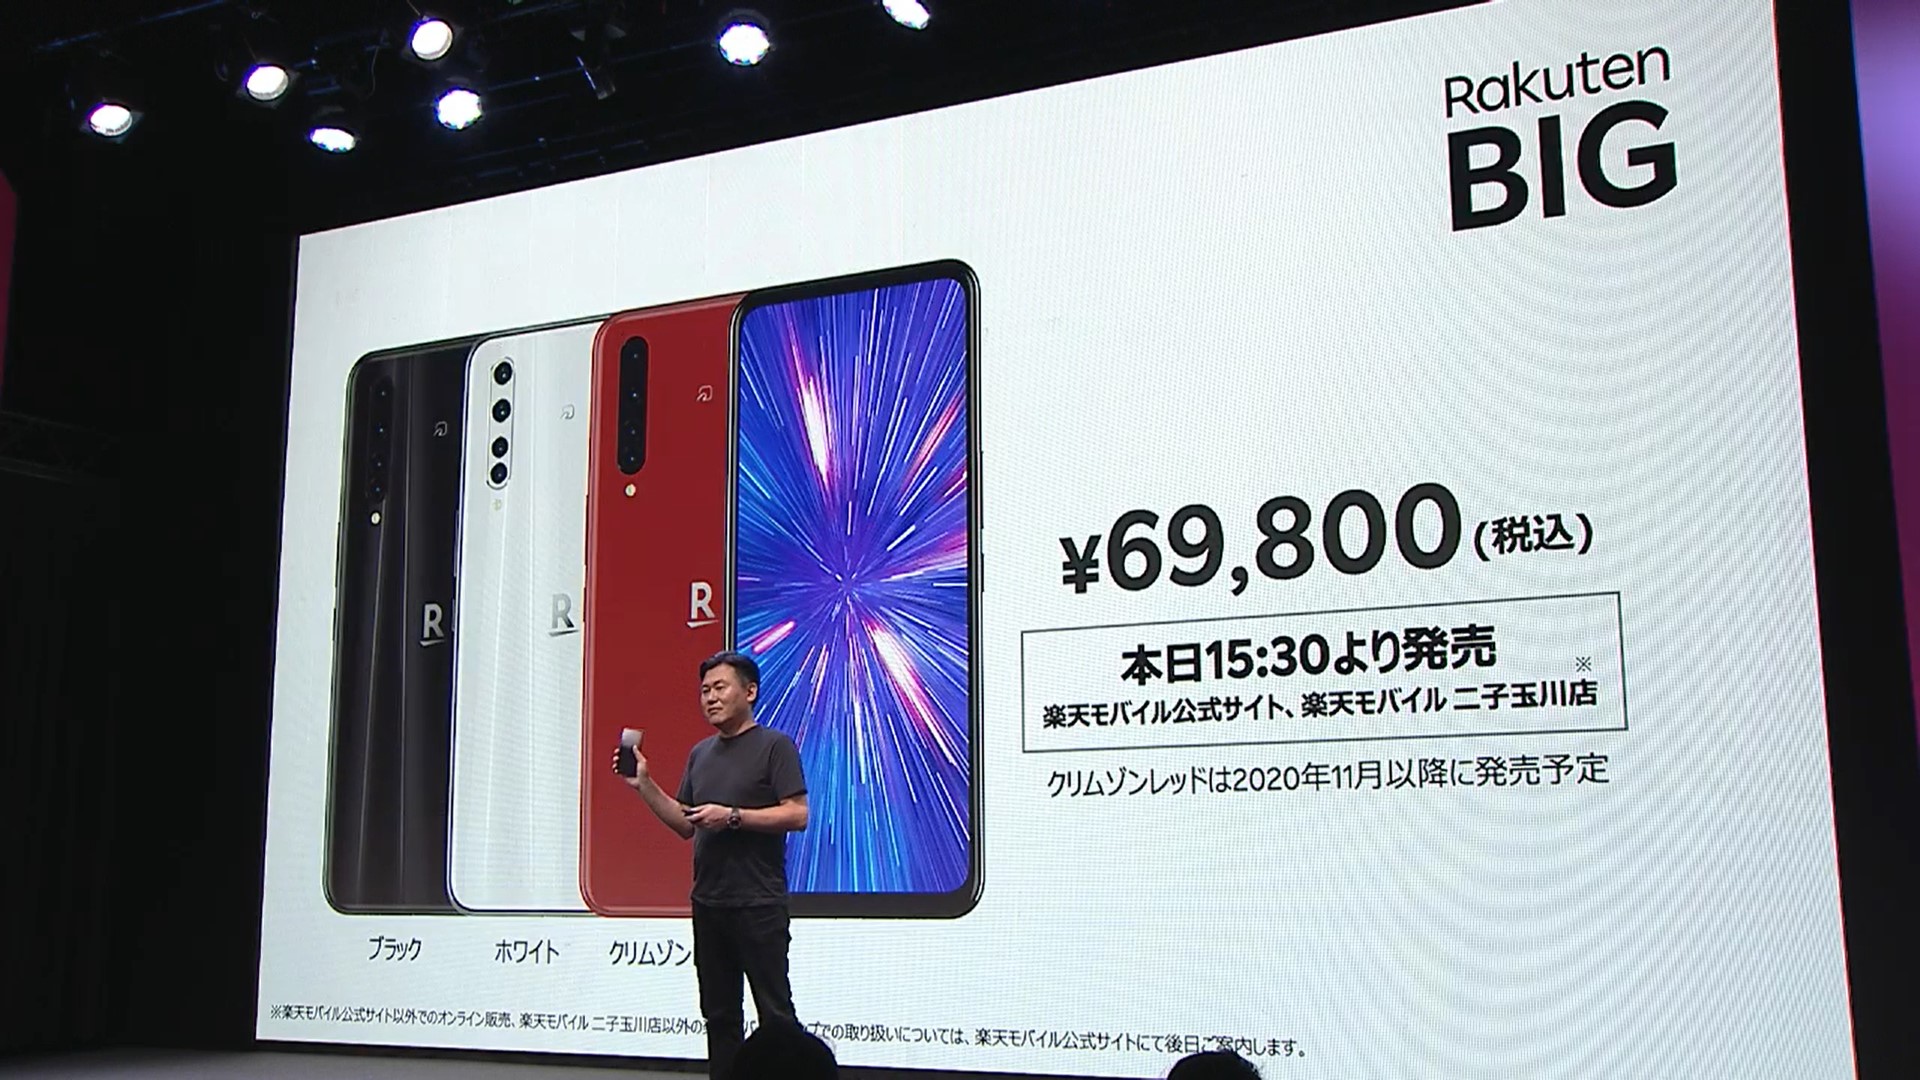 スマートフォン/携帯電話 スマートフォン本体 楽天モバイル、5Gスマホ「Rakuten BIG」を発売、6万9800円 - ケータイ 